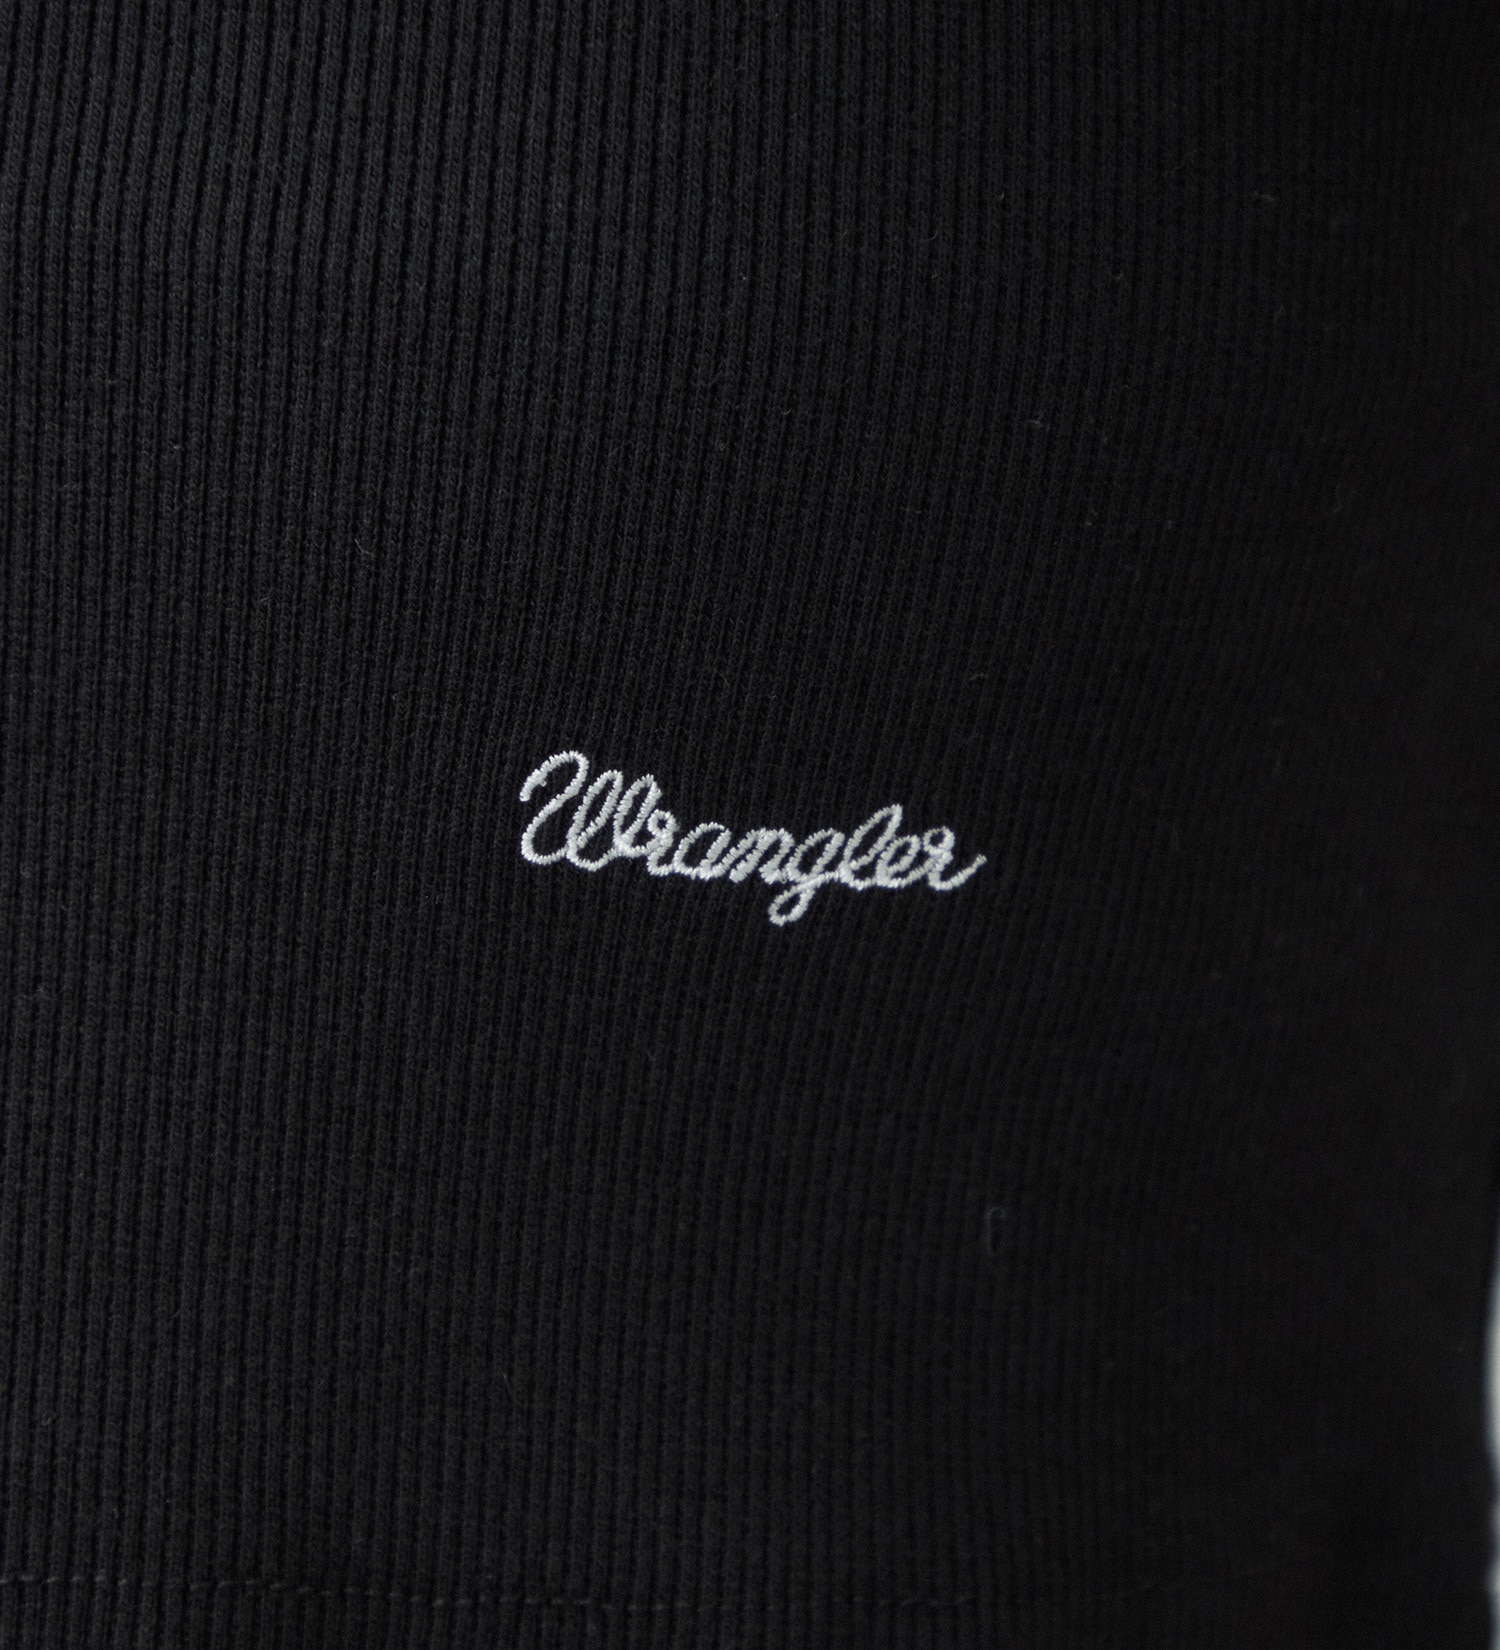 Wrangler(ラングラー)の【GW SALE】クロップドリブタンクトップTee|トップス/タンクトップ/レディース|ブラック